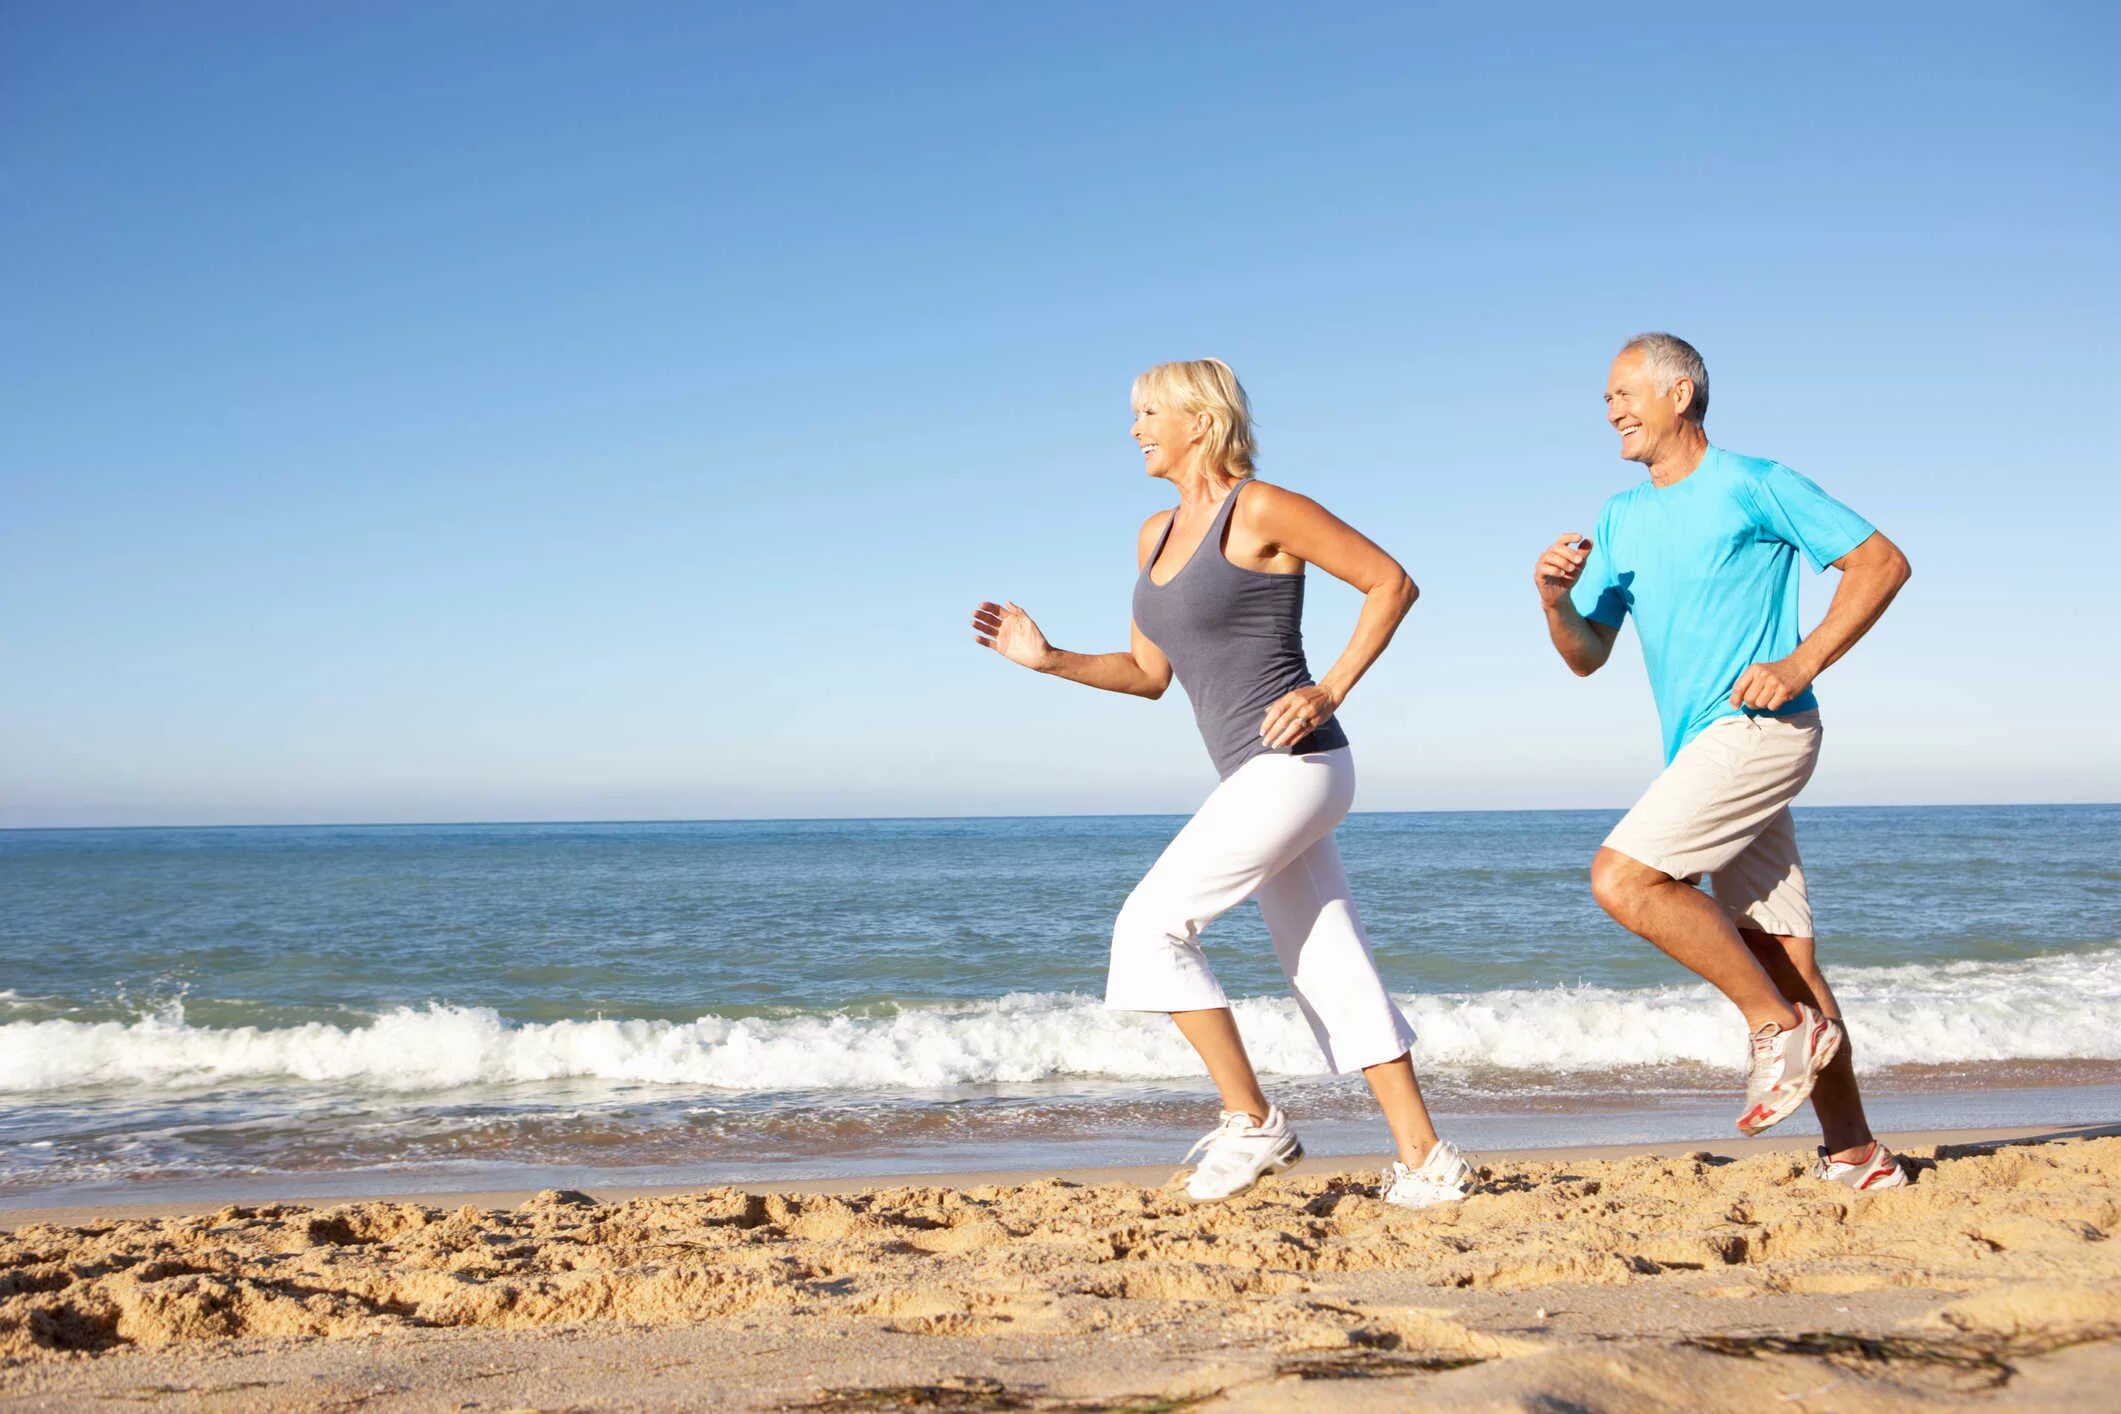 Активный образ жизни. Здоровый человек. Физическая активность и здоровье. Здоровье и долголетие человека. Sport helps people